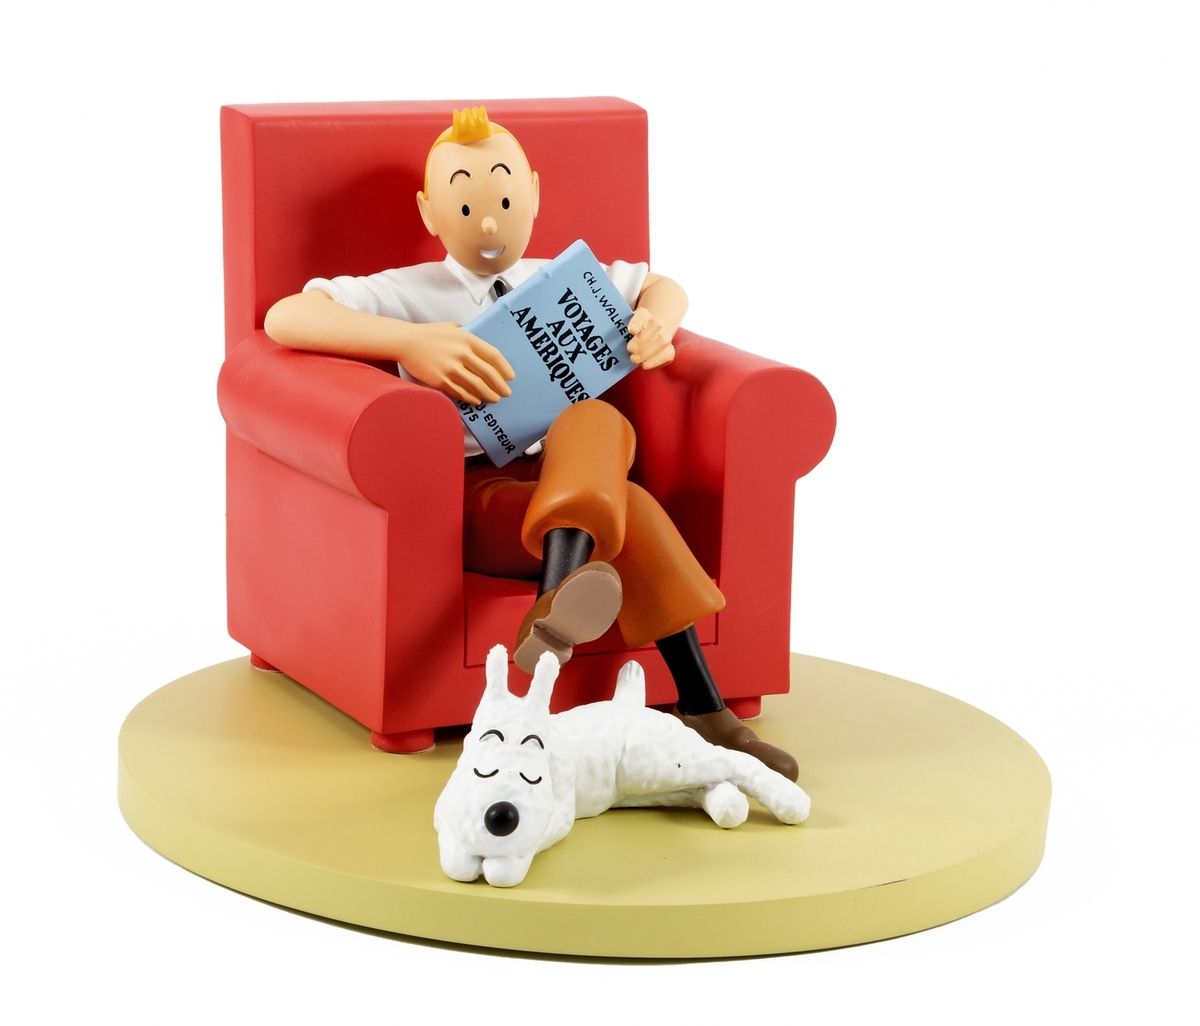 Hergé : MOULINSART：丁丁，46404，大红椅子，《断耳》，2018年，编号，23厘米，BC。椅子上的一个划痕。